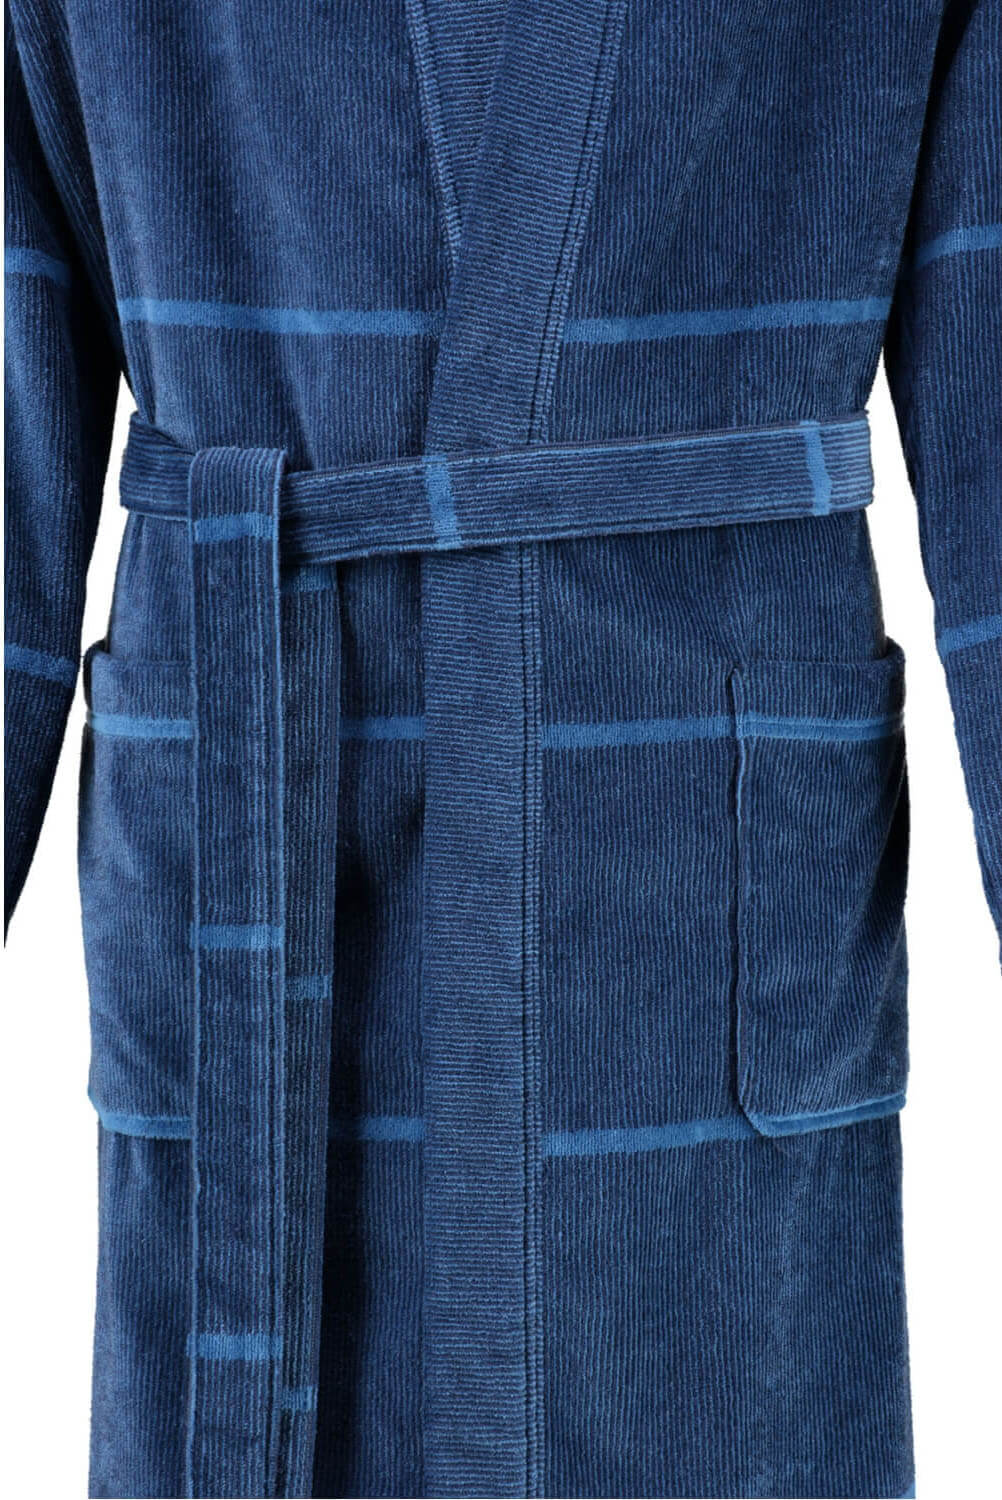 Мужской халат Cawo Kimono Blau ☞ Размер: 52